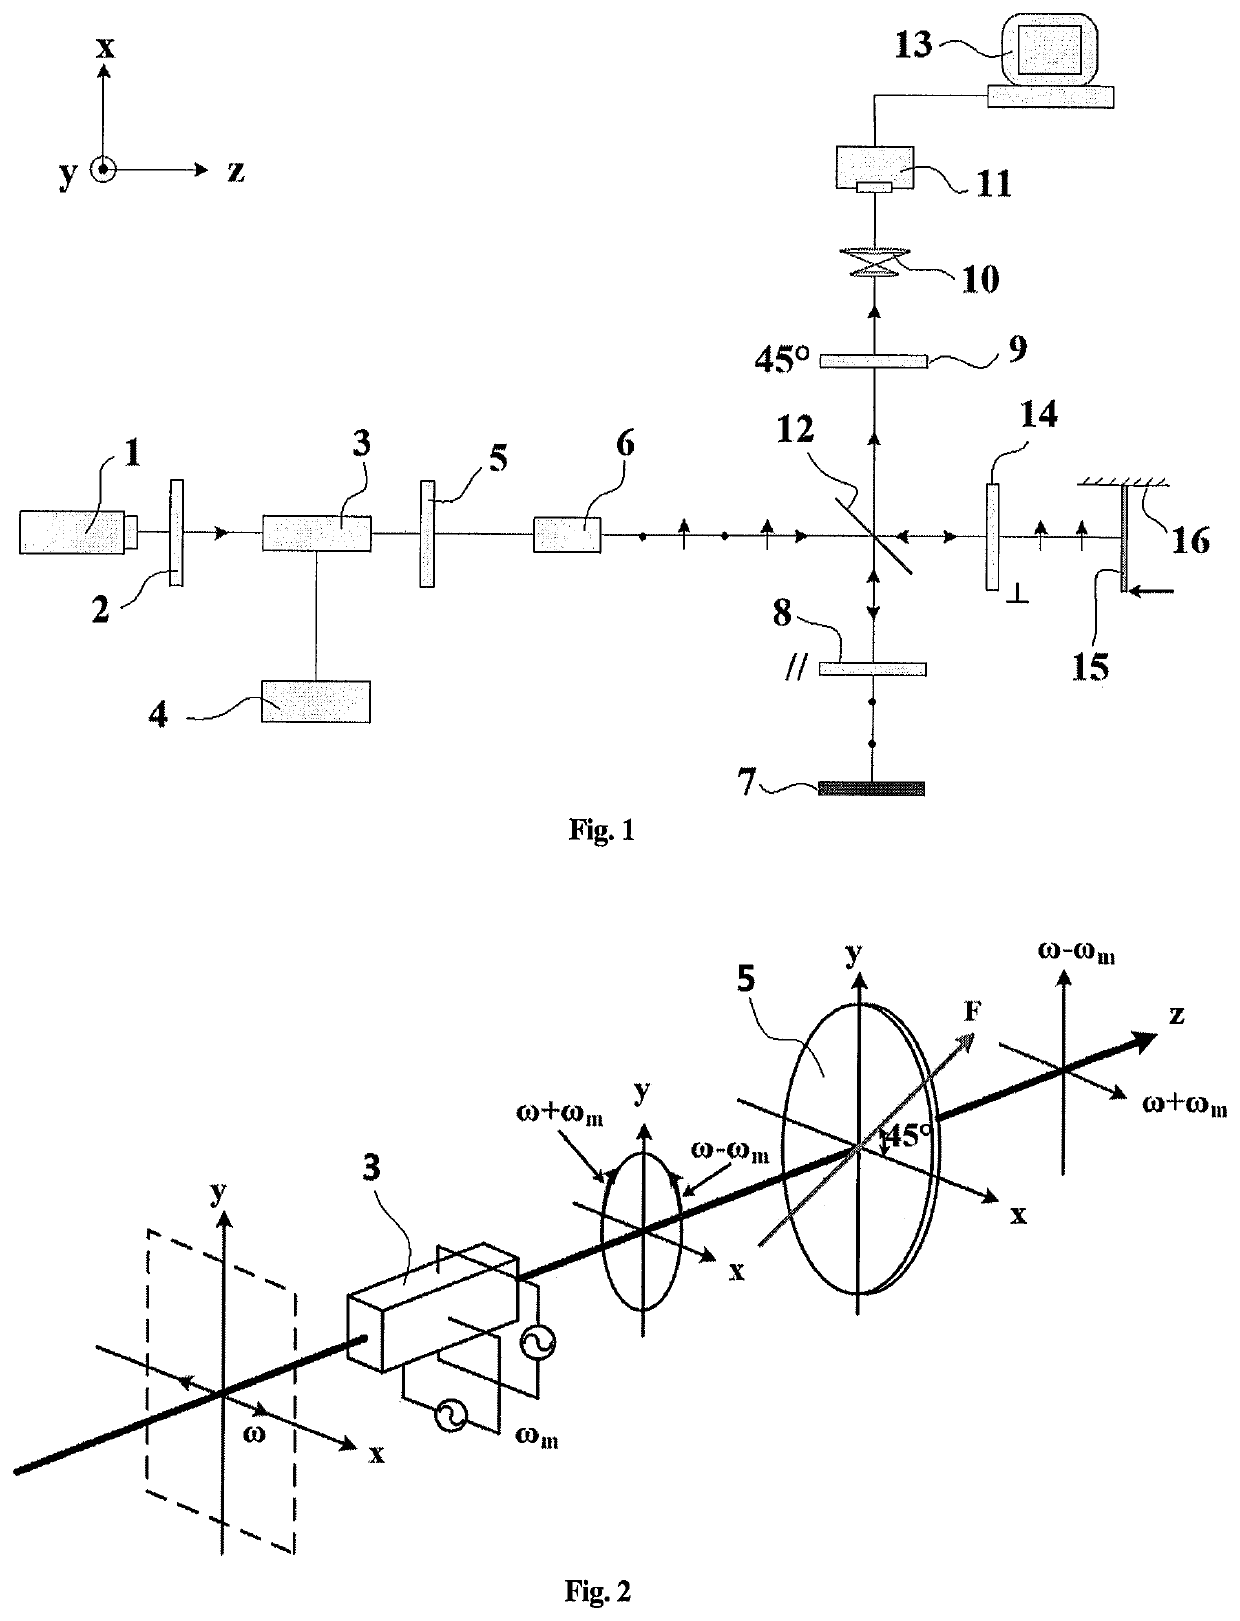 Method for full-field measurement using dynamic laser doppler imaging